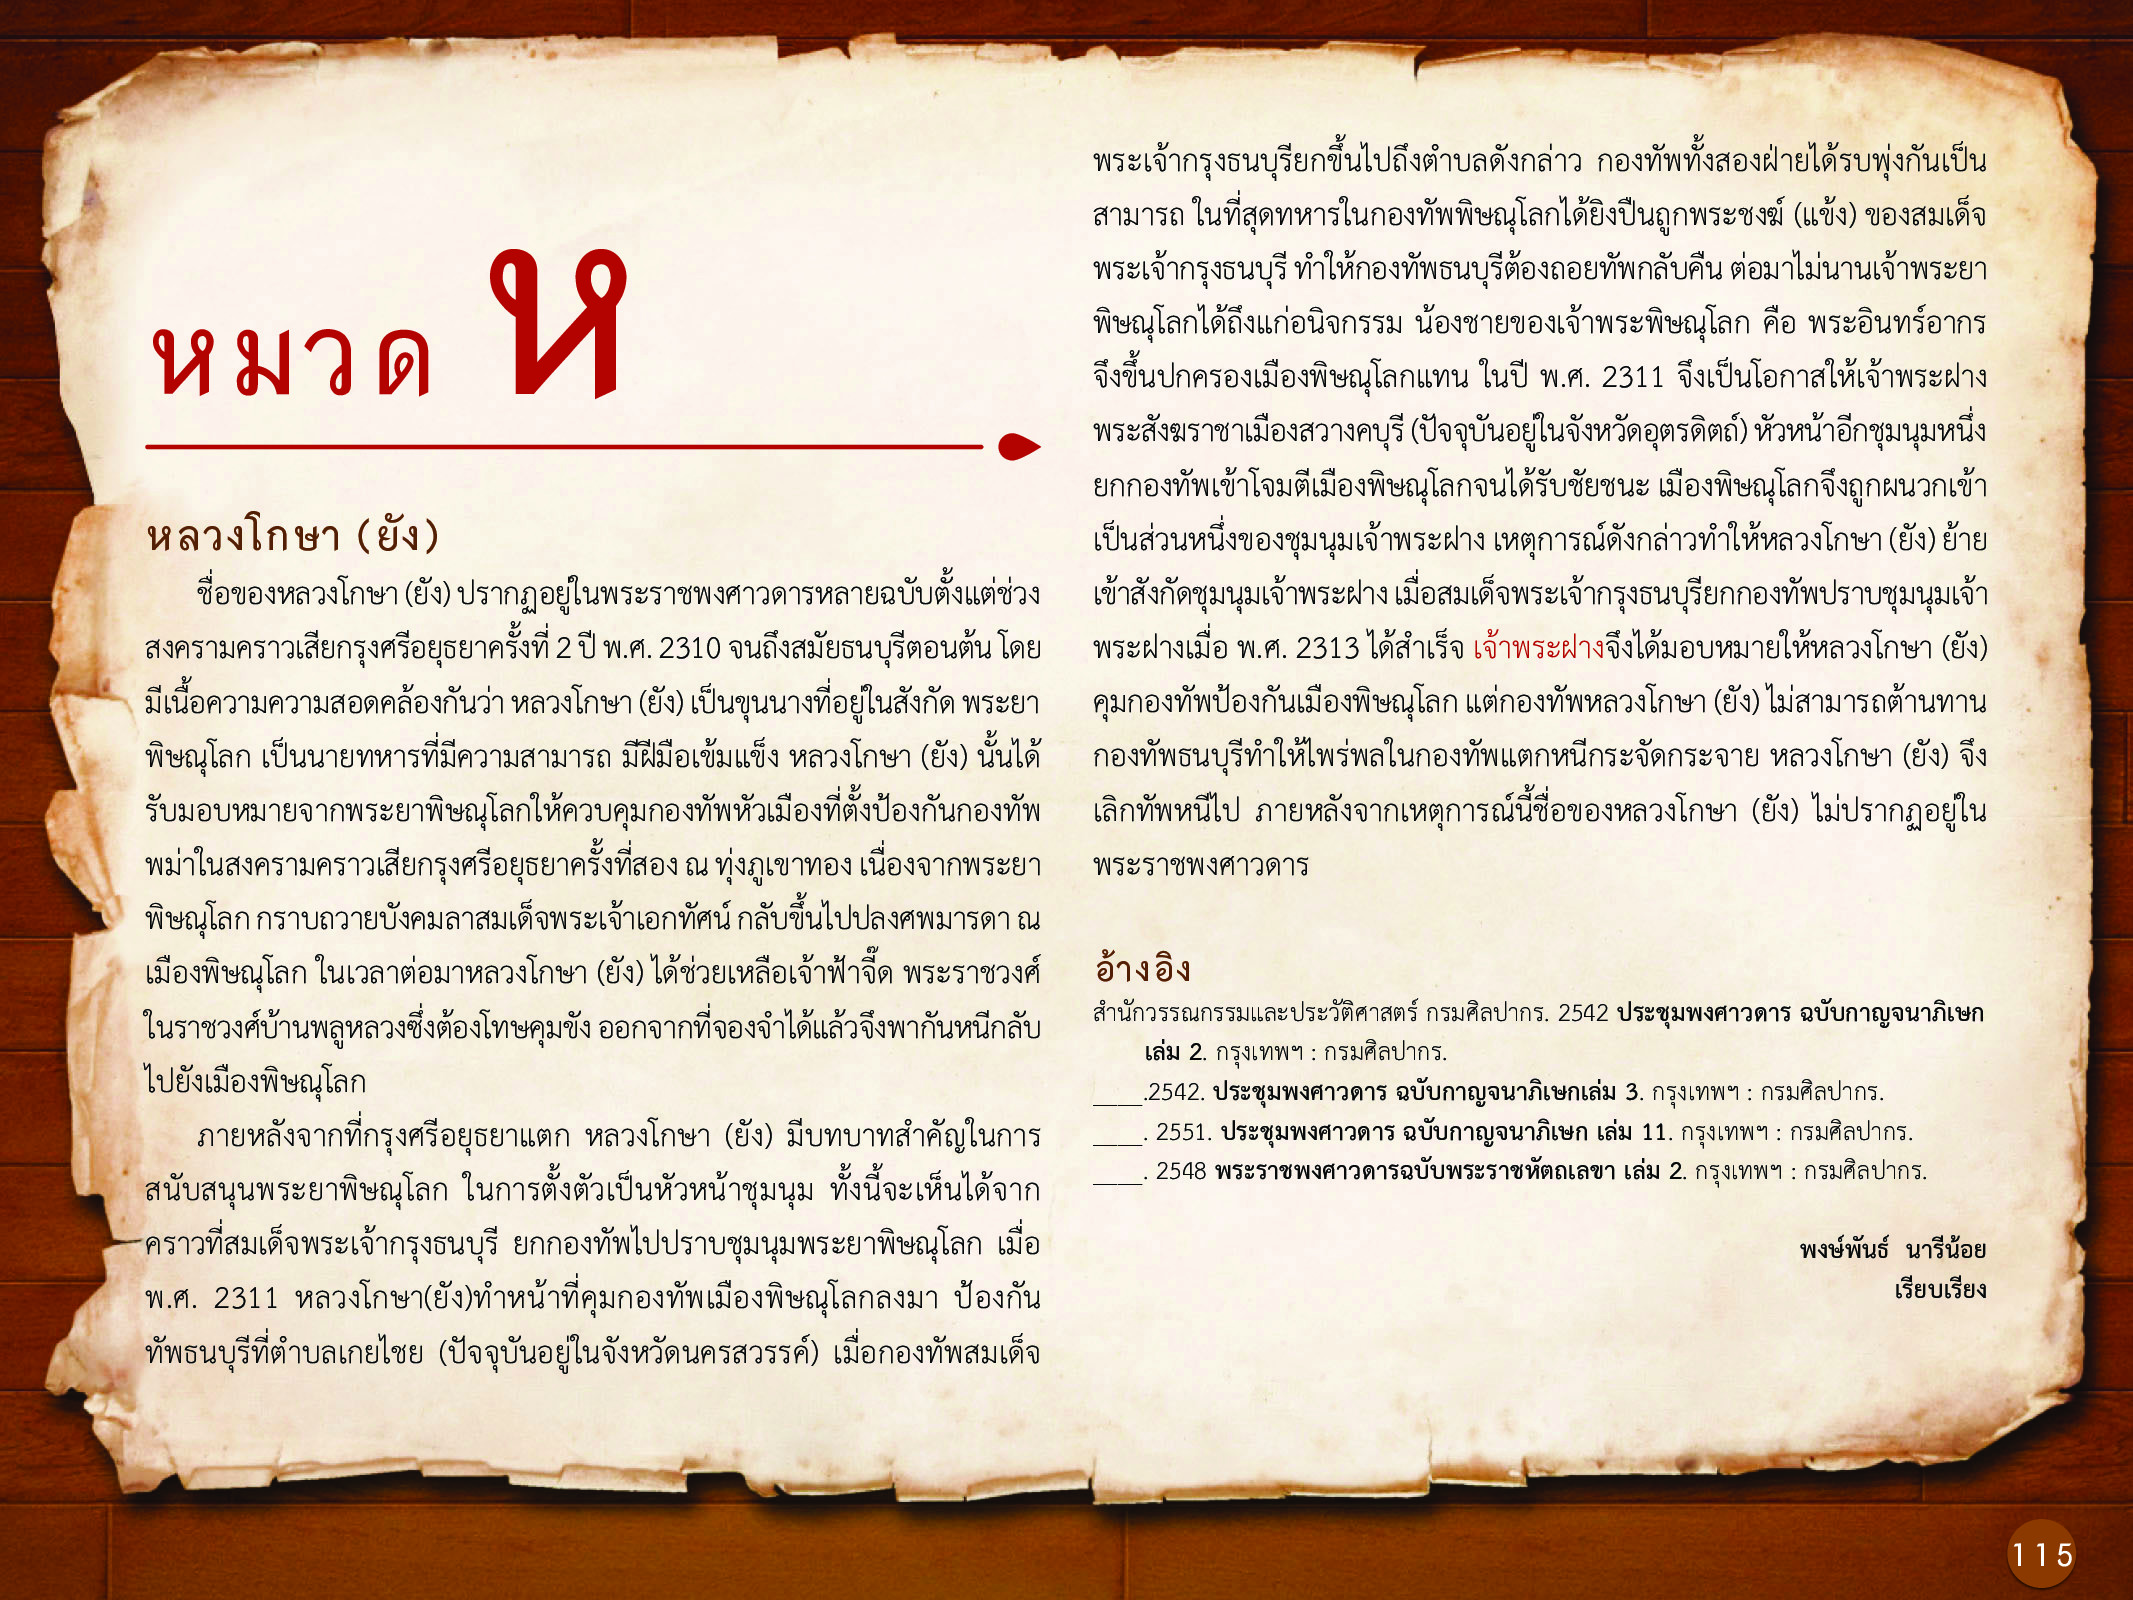 ประวัติศาสตร์กรุงธนบุรี ./images/history_dhonburi/115.jpg